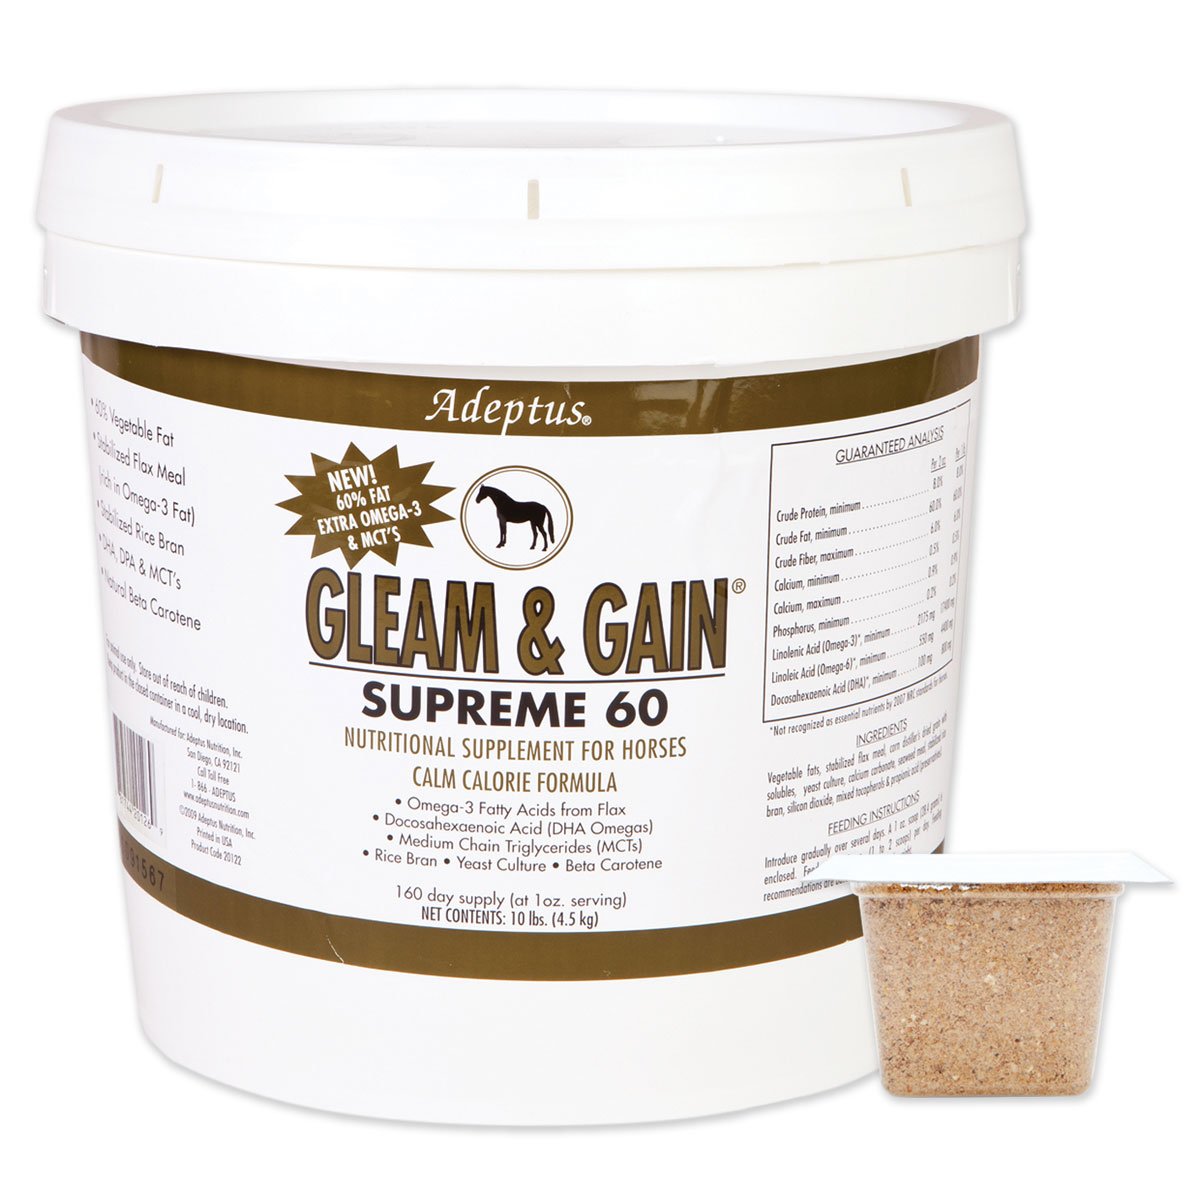 Adeptus Nutrition 1 count gleam & gain Supreme 60 Equine, 10 lb